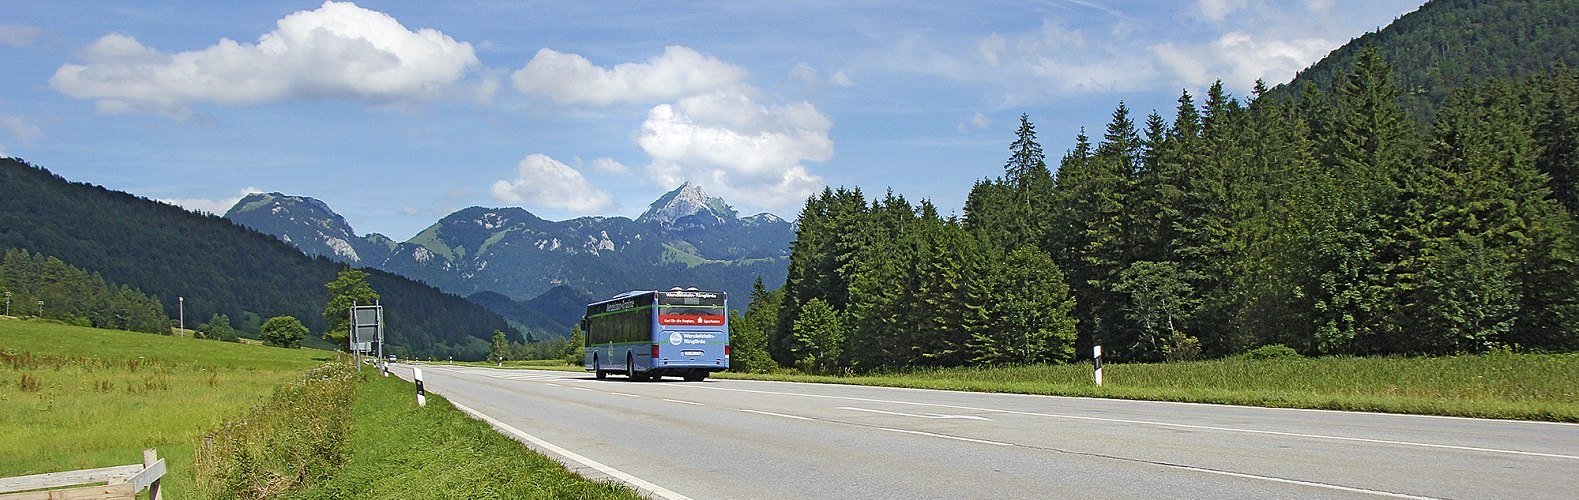 Die Busse der Wendelstein-Ringlinie verbinden die beiden Talstationen der Wendelsteinbahn in Brannenburg und Bayrischzell, © Peter Zangerl, Typomedia